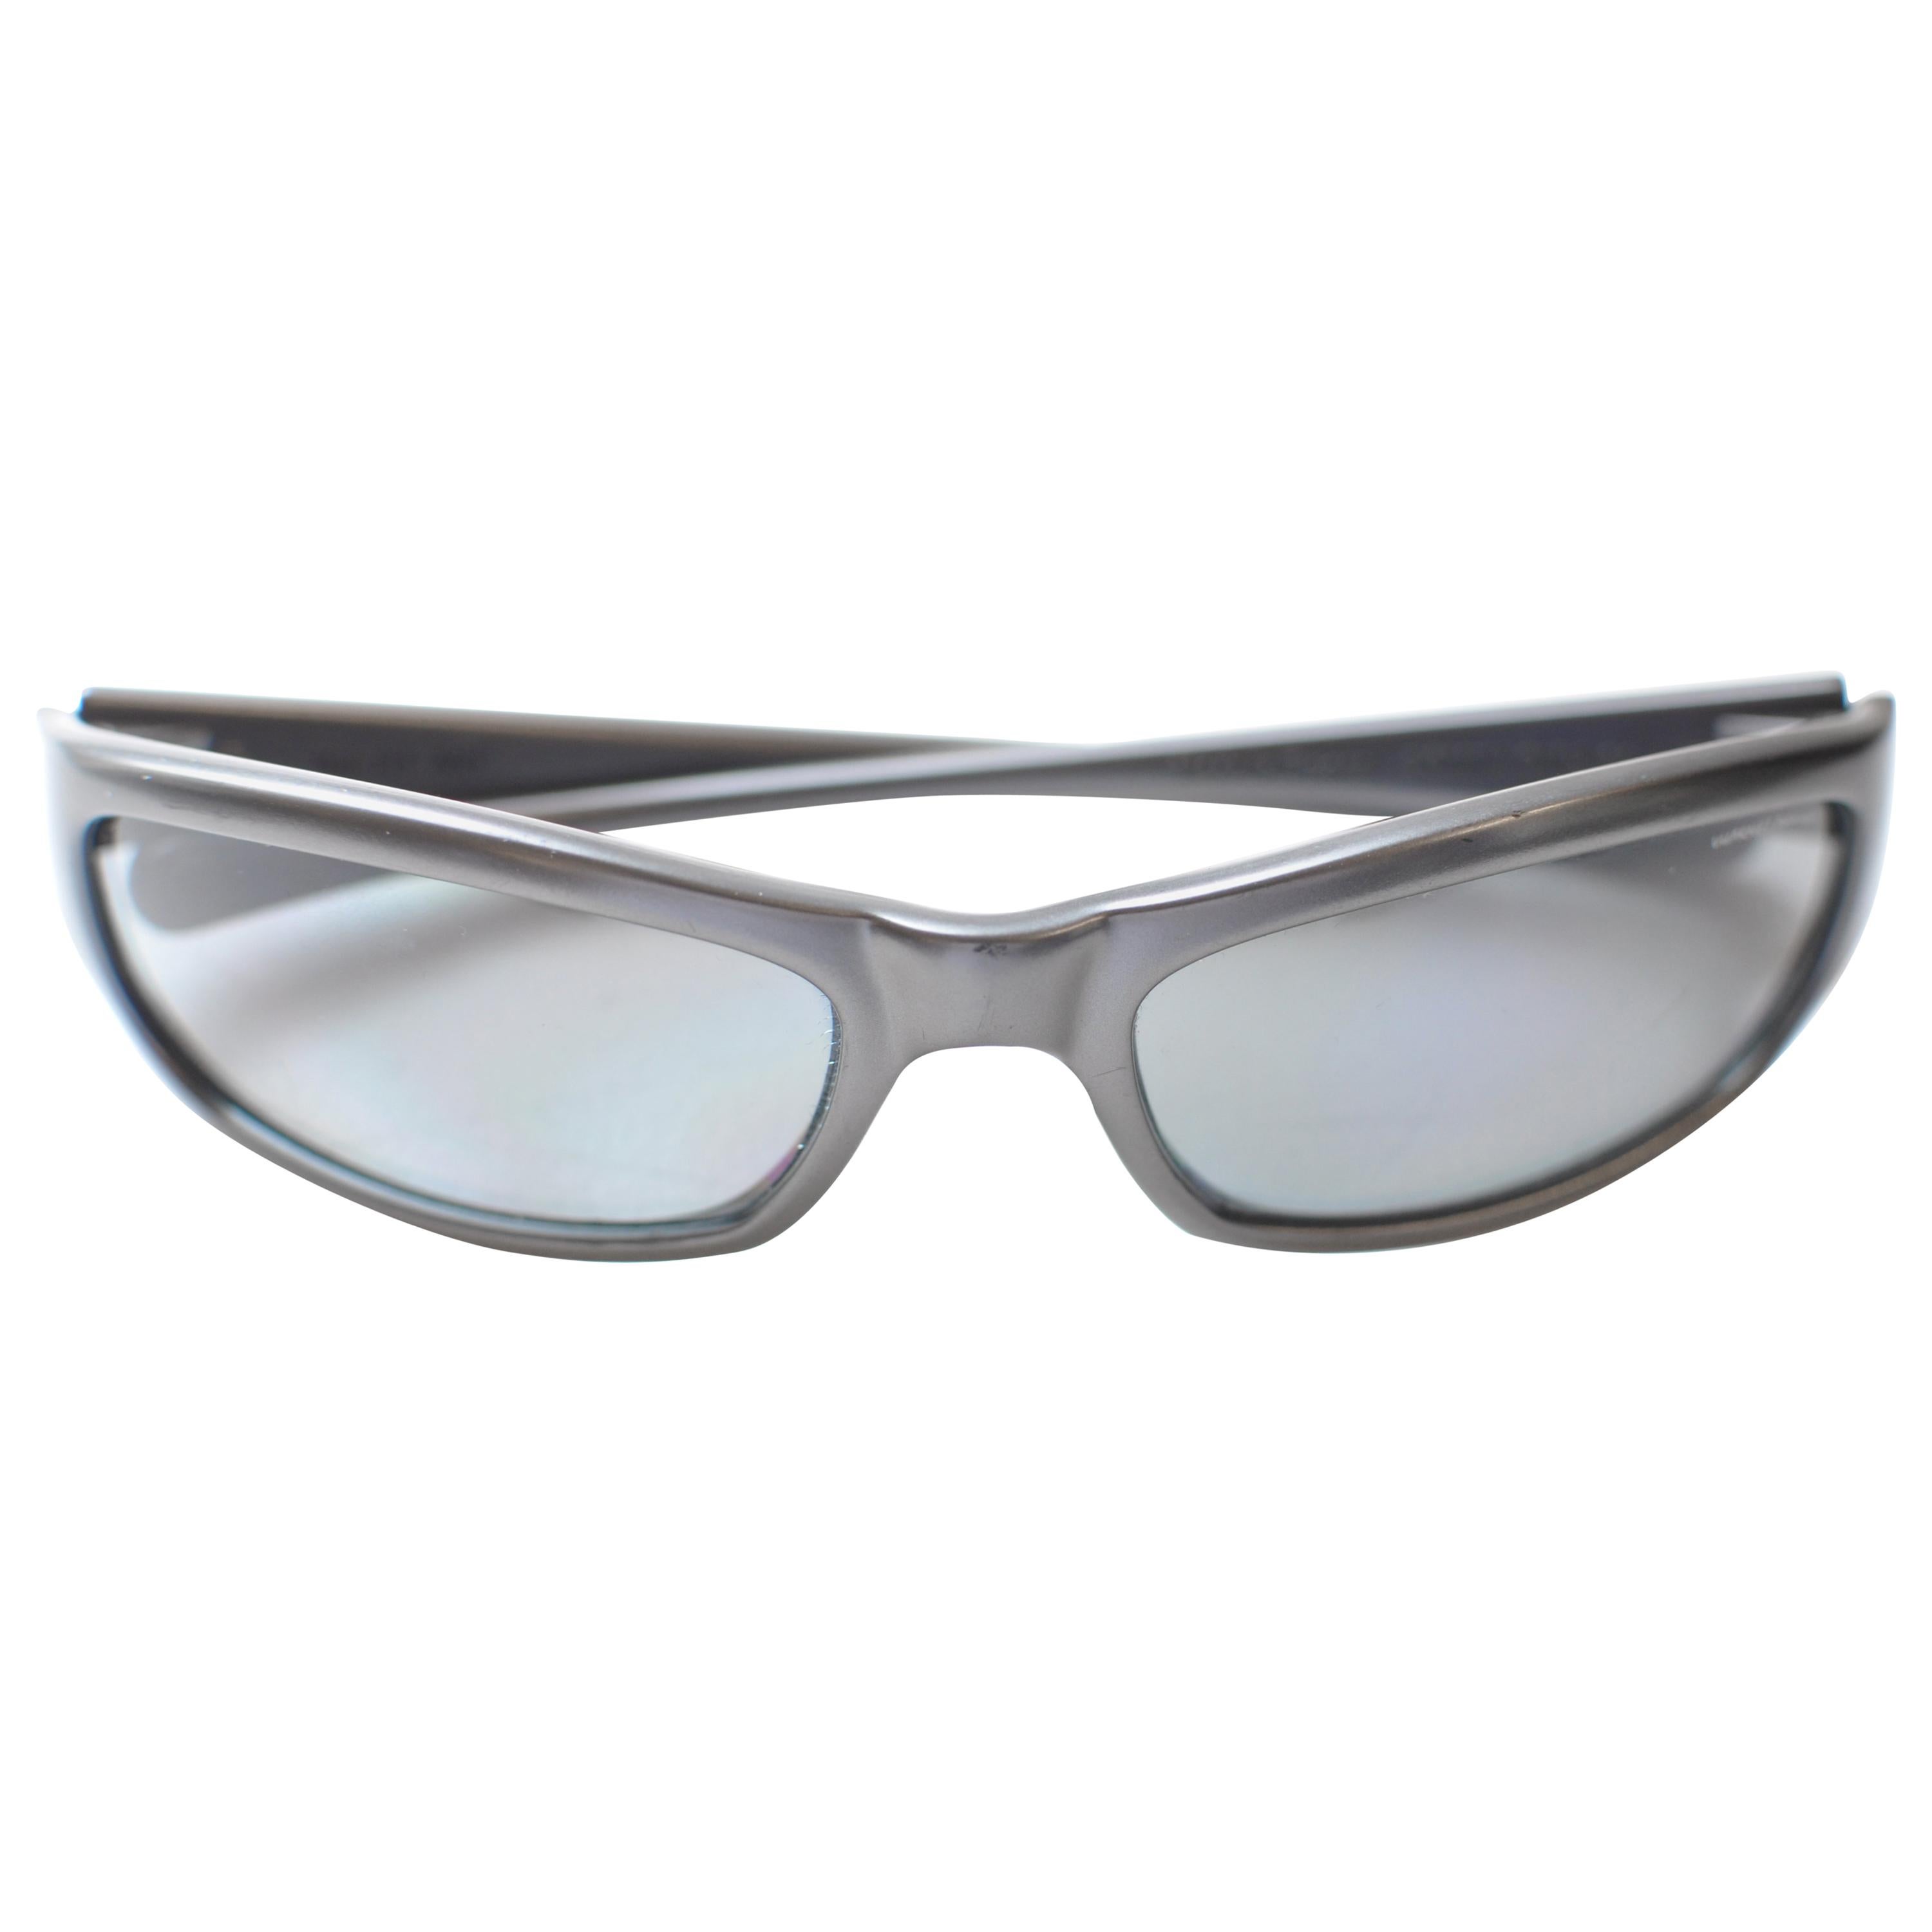 Vuarnet Pouilloux Sunglasses Ref 111 ANT 